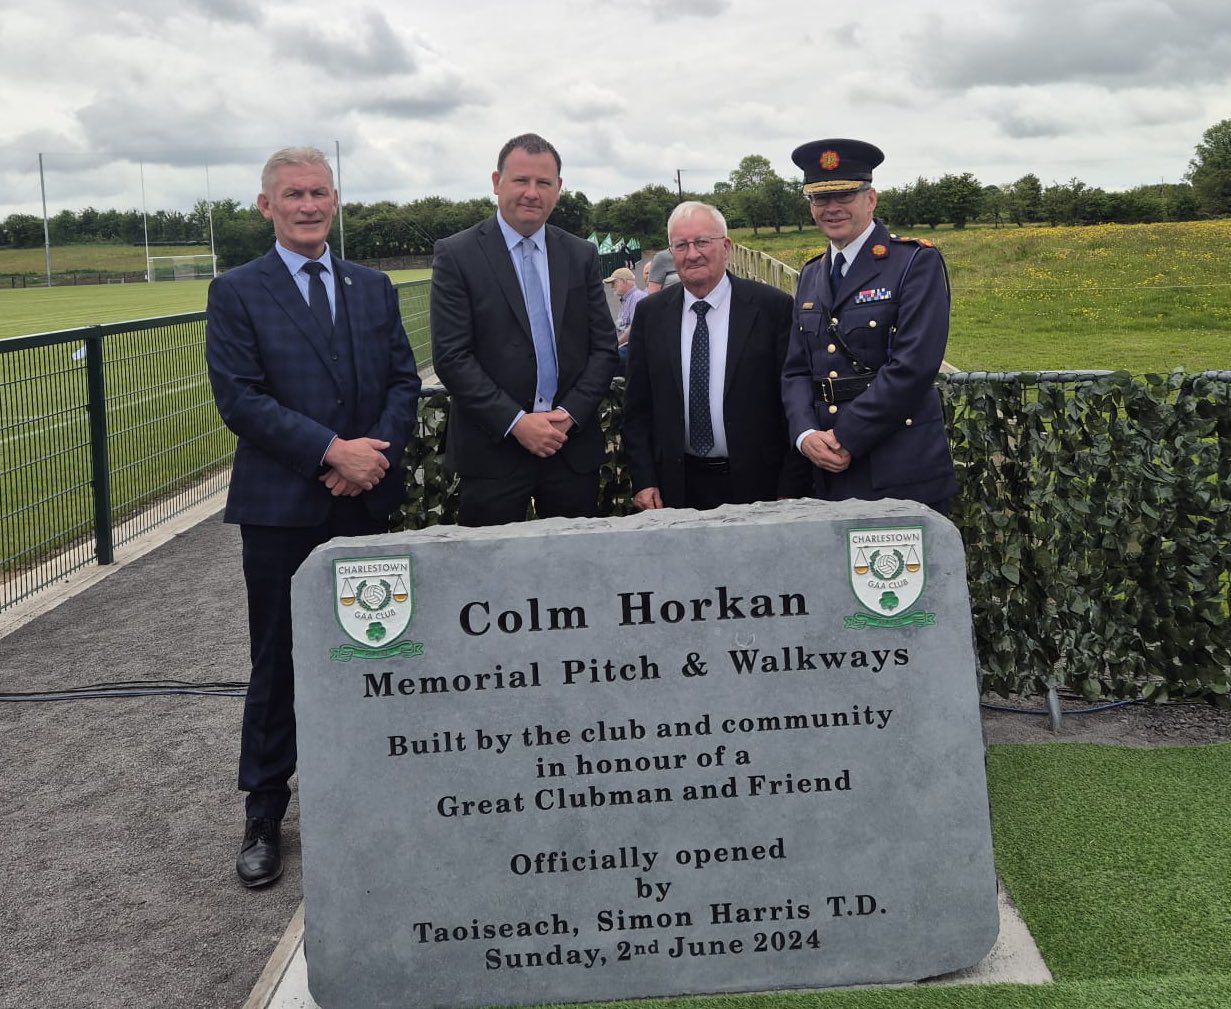 Commemorating Detective Garda Colm Horkan Memorial Pitch & Walkways